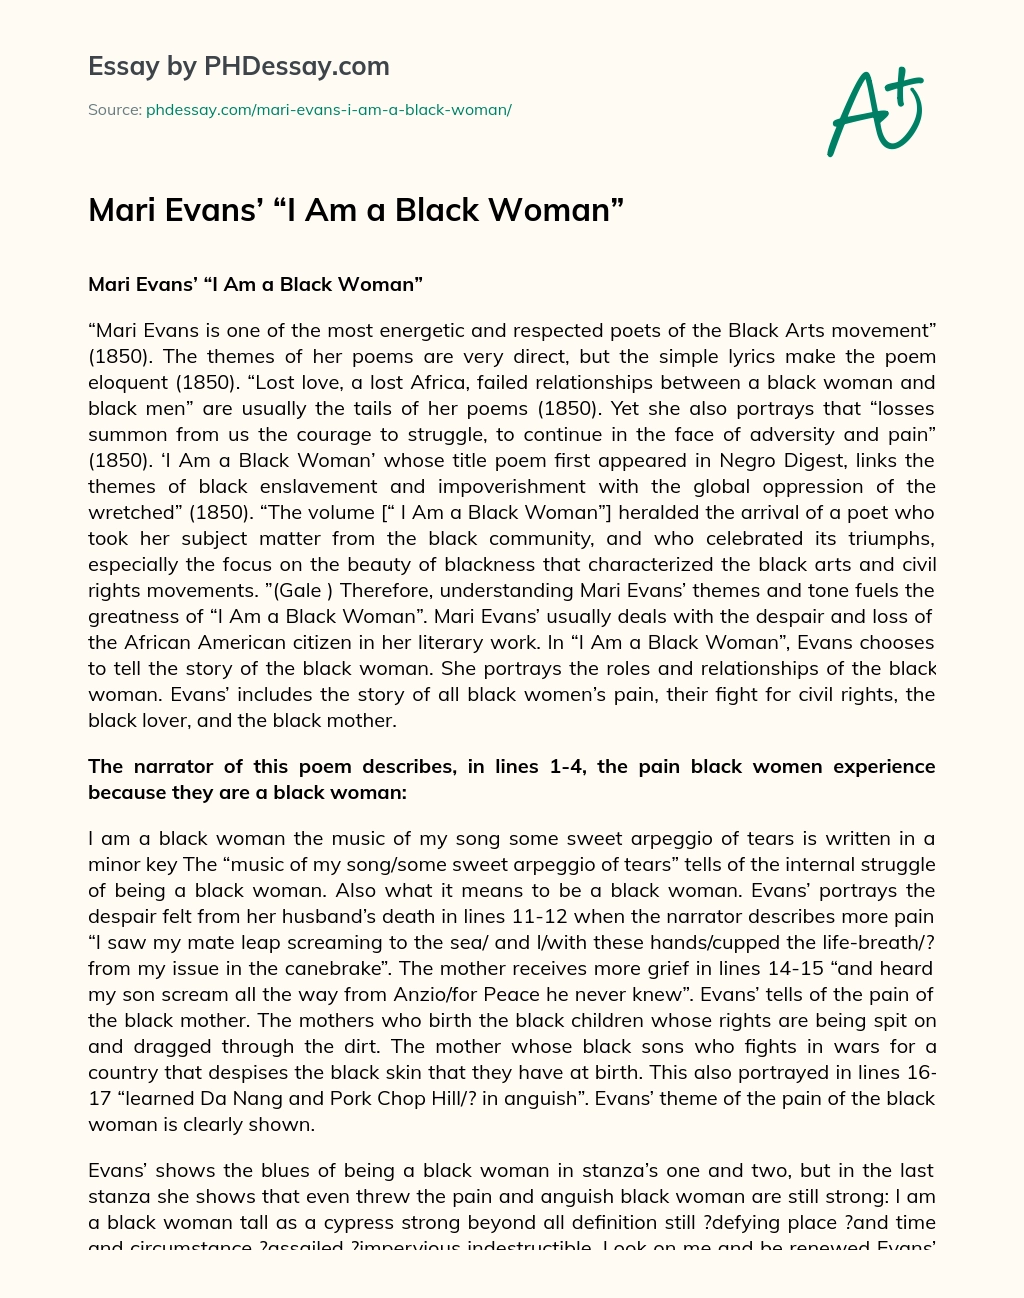 Mari Evans’ “I Am a Black Woman” essay